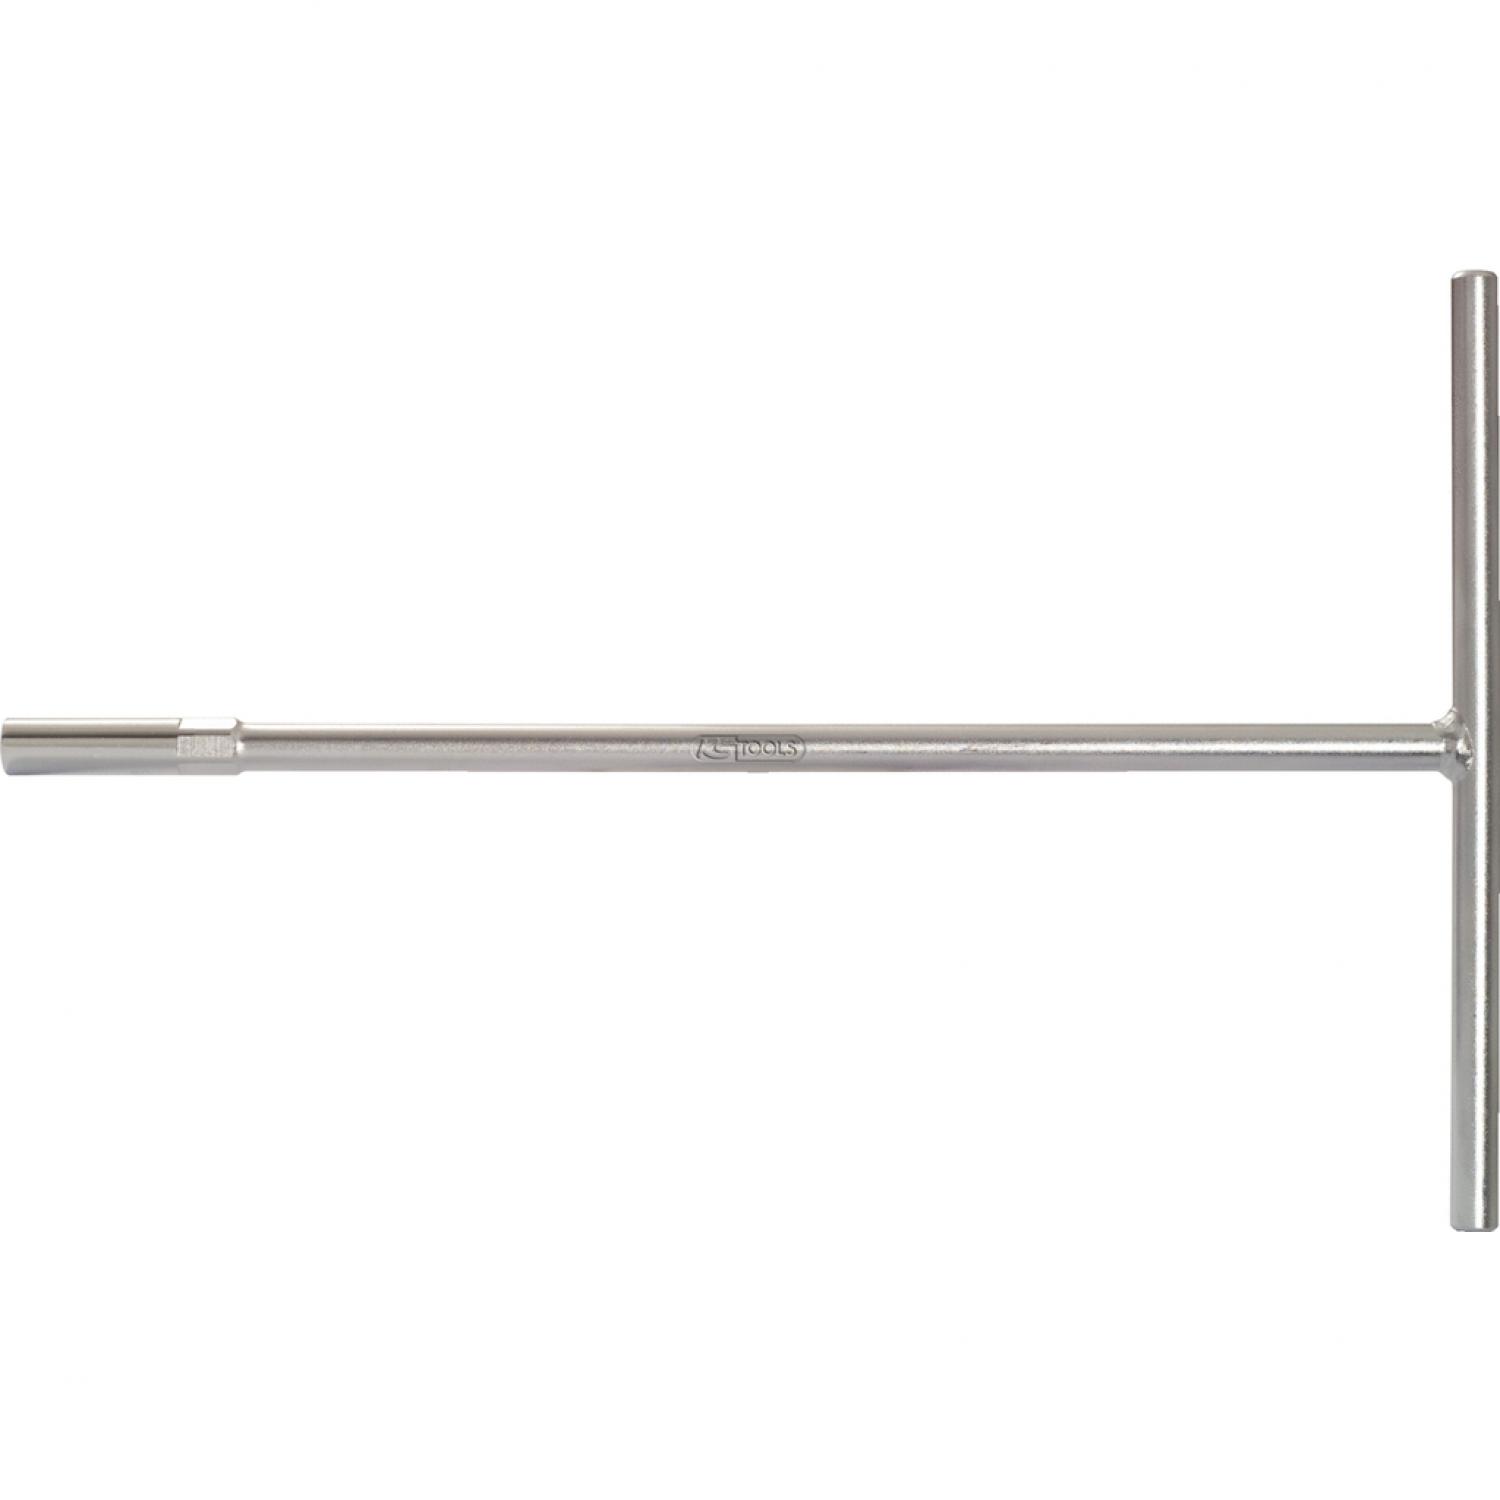 Торцовый ключ с Т-образной рукояткой, 300 мм, 9 мм